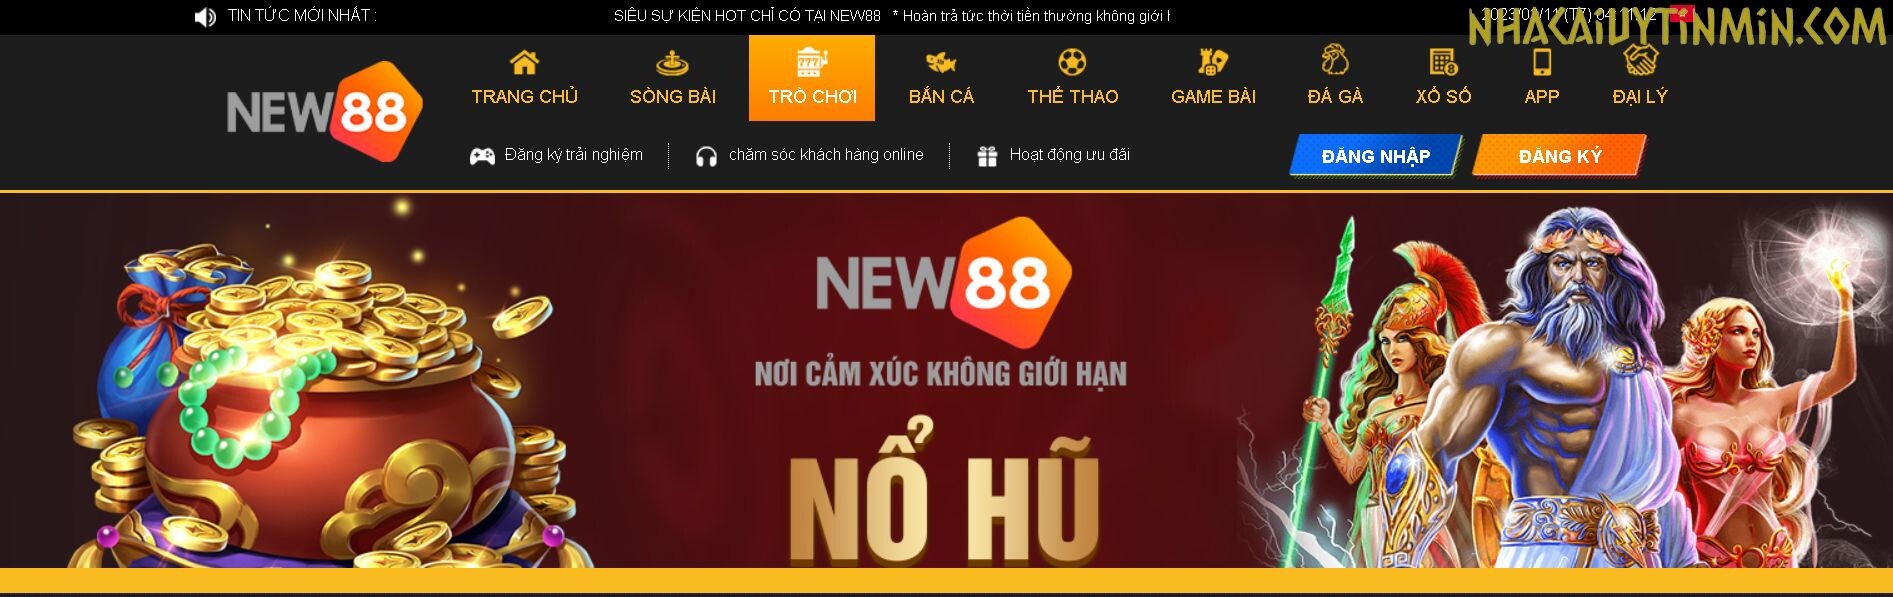 New88 là một thương hiệu nhà cái cá cược Casino Online uy tín hàng đầu tại thị trường cá cược Việt Nam